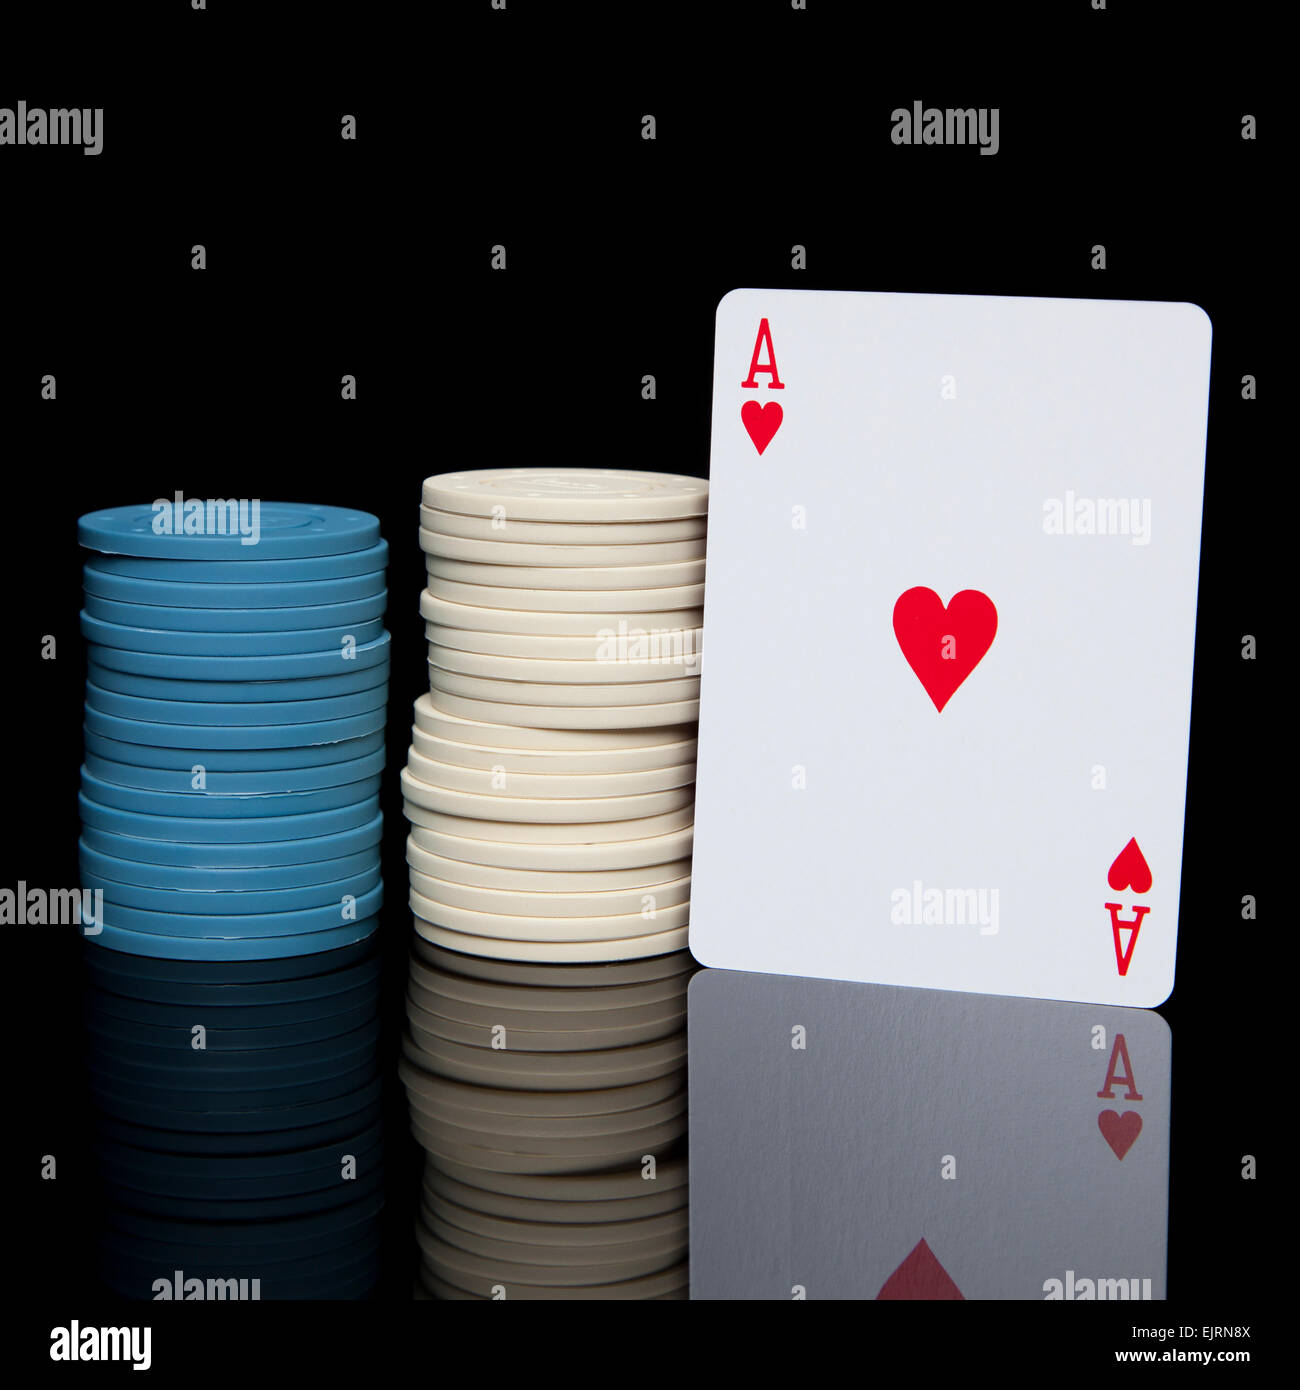 Zwei Stapel von blauen und weißen Poker chips mit einem Ass Herz-Karte auf eine glänzende schwarze Oberfläche reflektiert Stockfoto